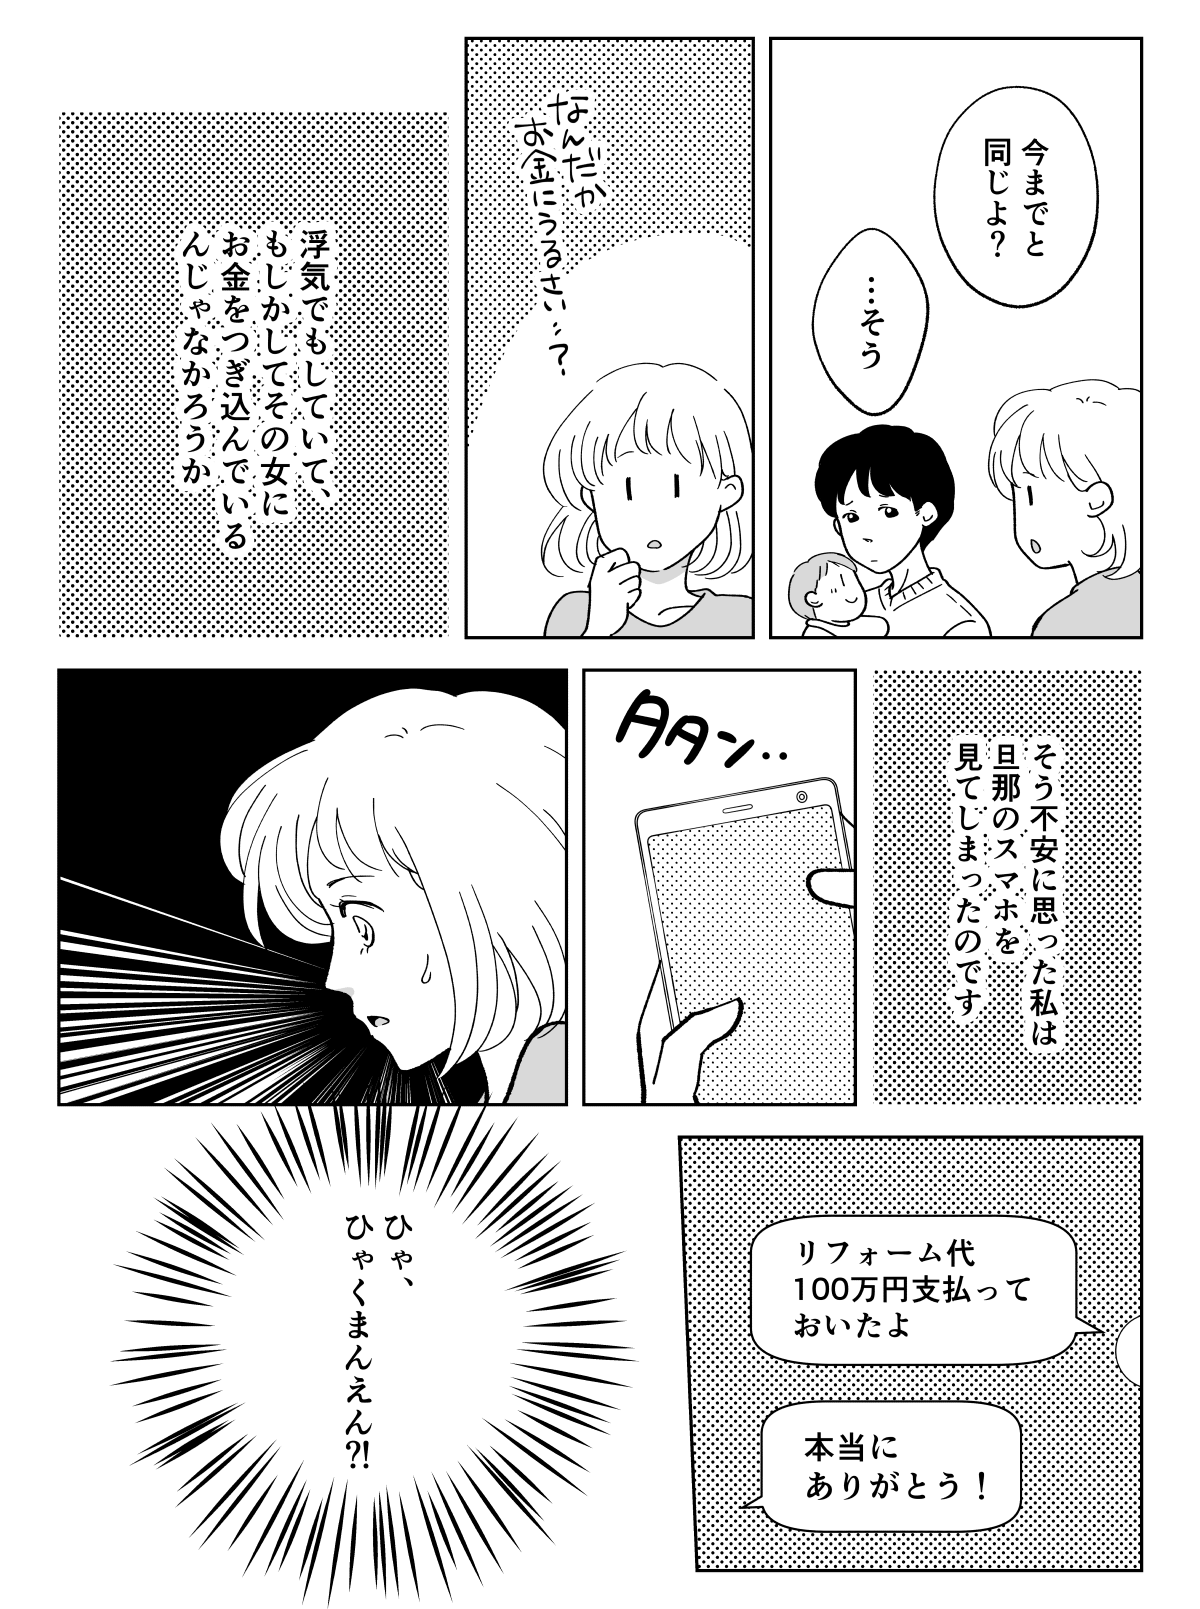 コミック001_003